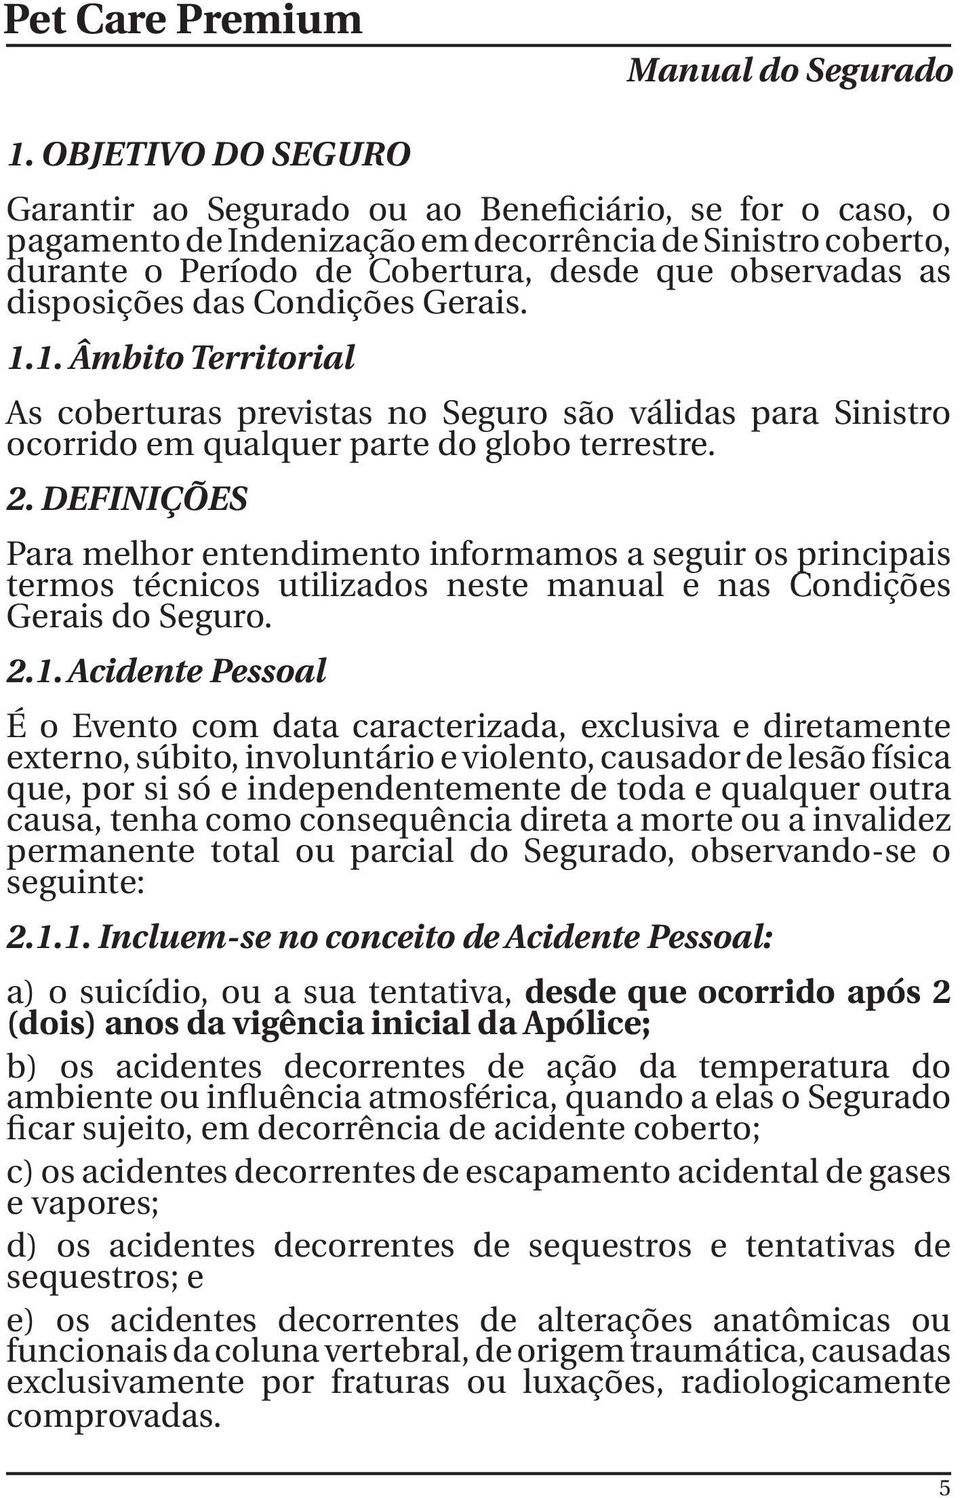 disposições das Condições Gerais. 1.1. Âmbito Territorial As coberturas previstas no Seguro são válidas para Sinistro ocorrido em qualquer parte do globo terrestre. 2.